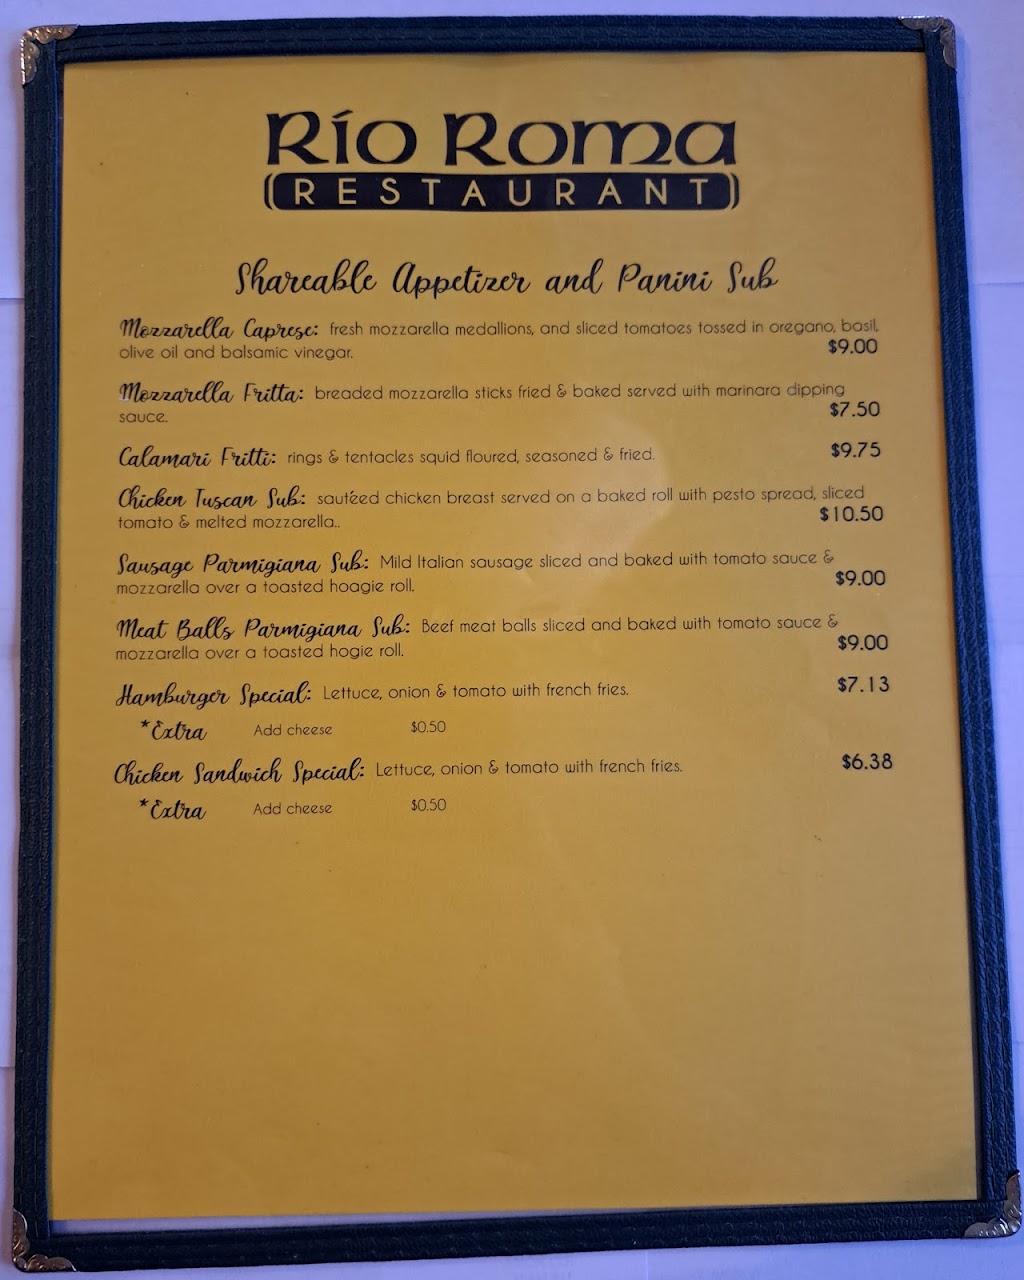 Rio Roma | restaurant | 115 Main St, Texarkana, TX 75501, USA | 2144475988 OR +1 214-447-5988